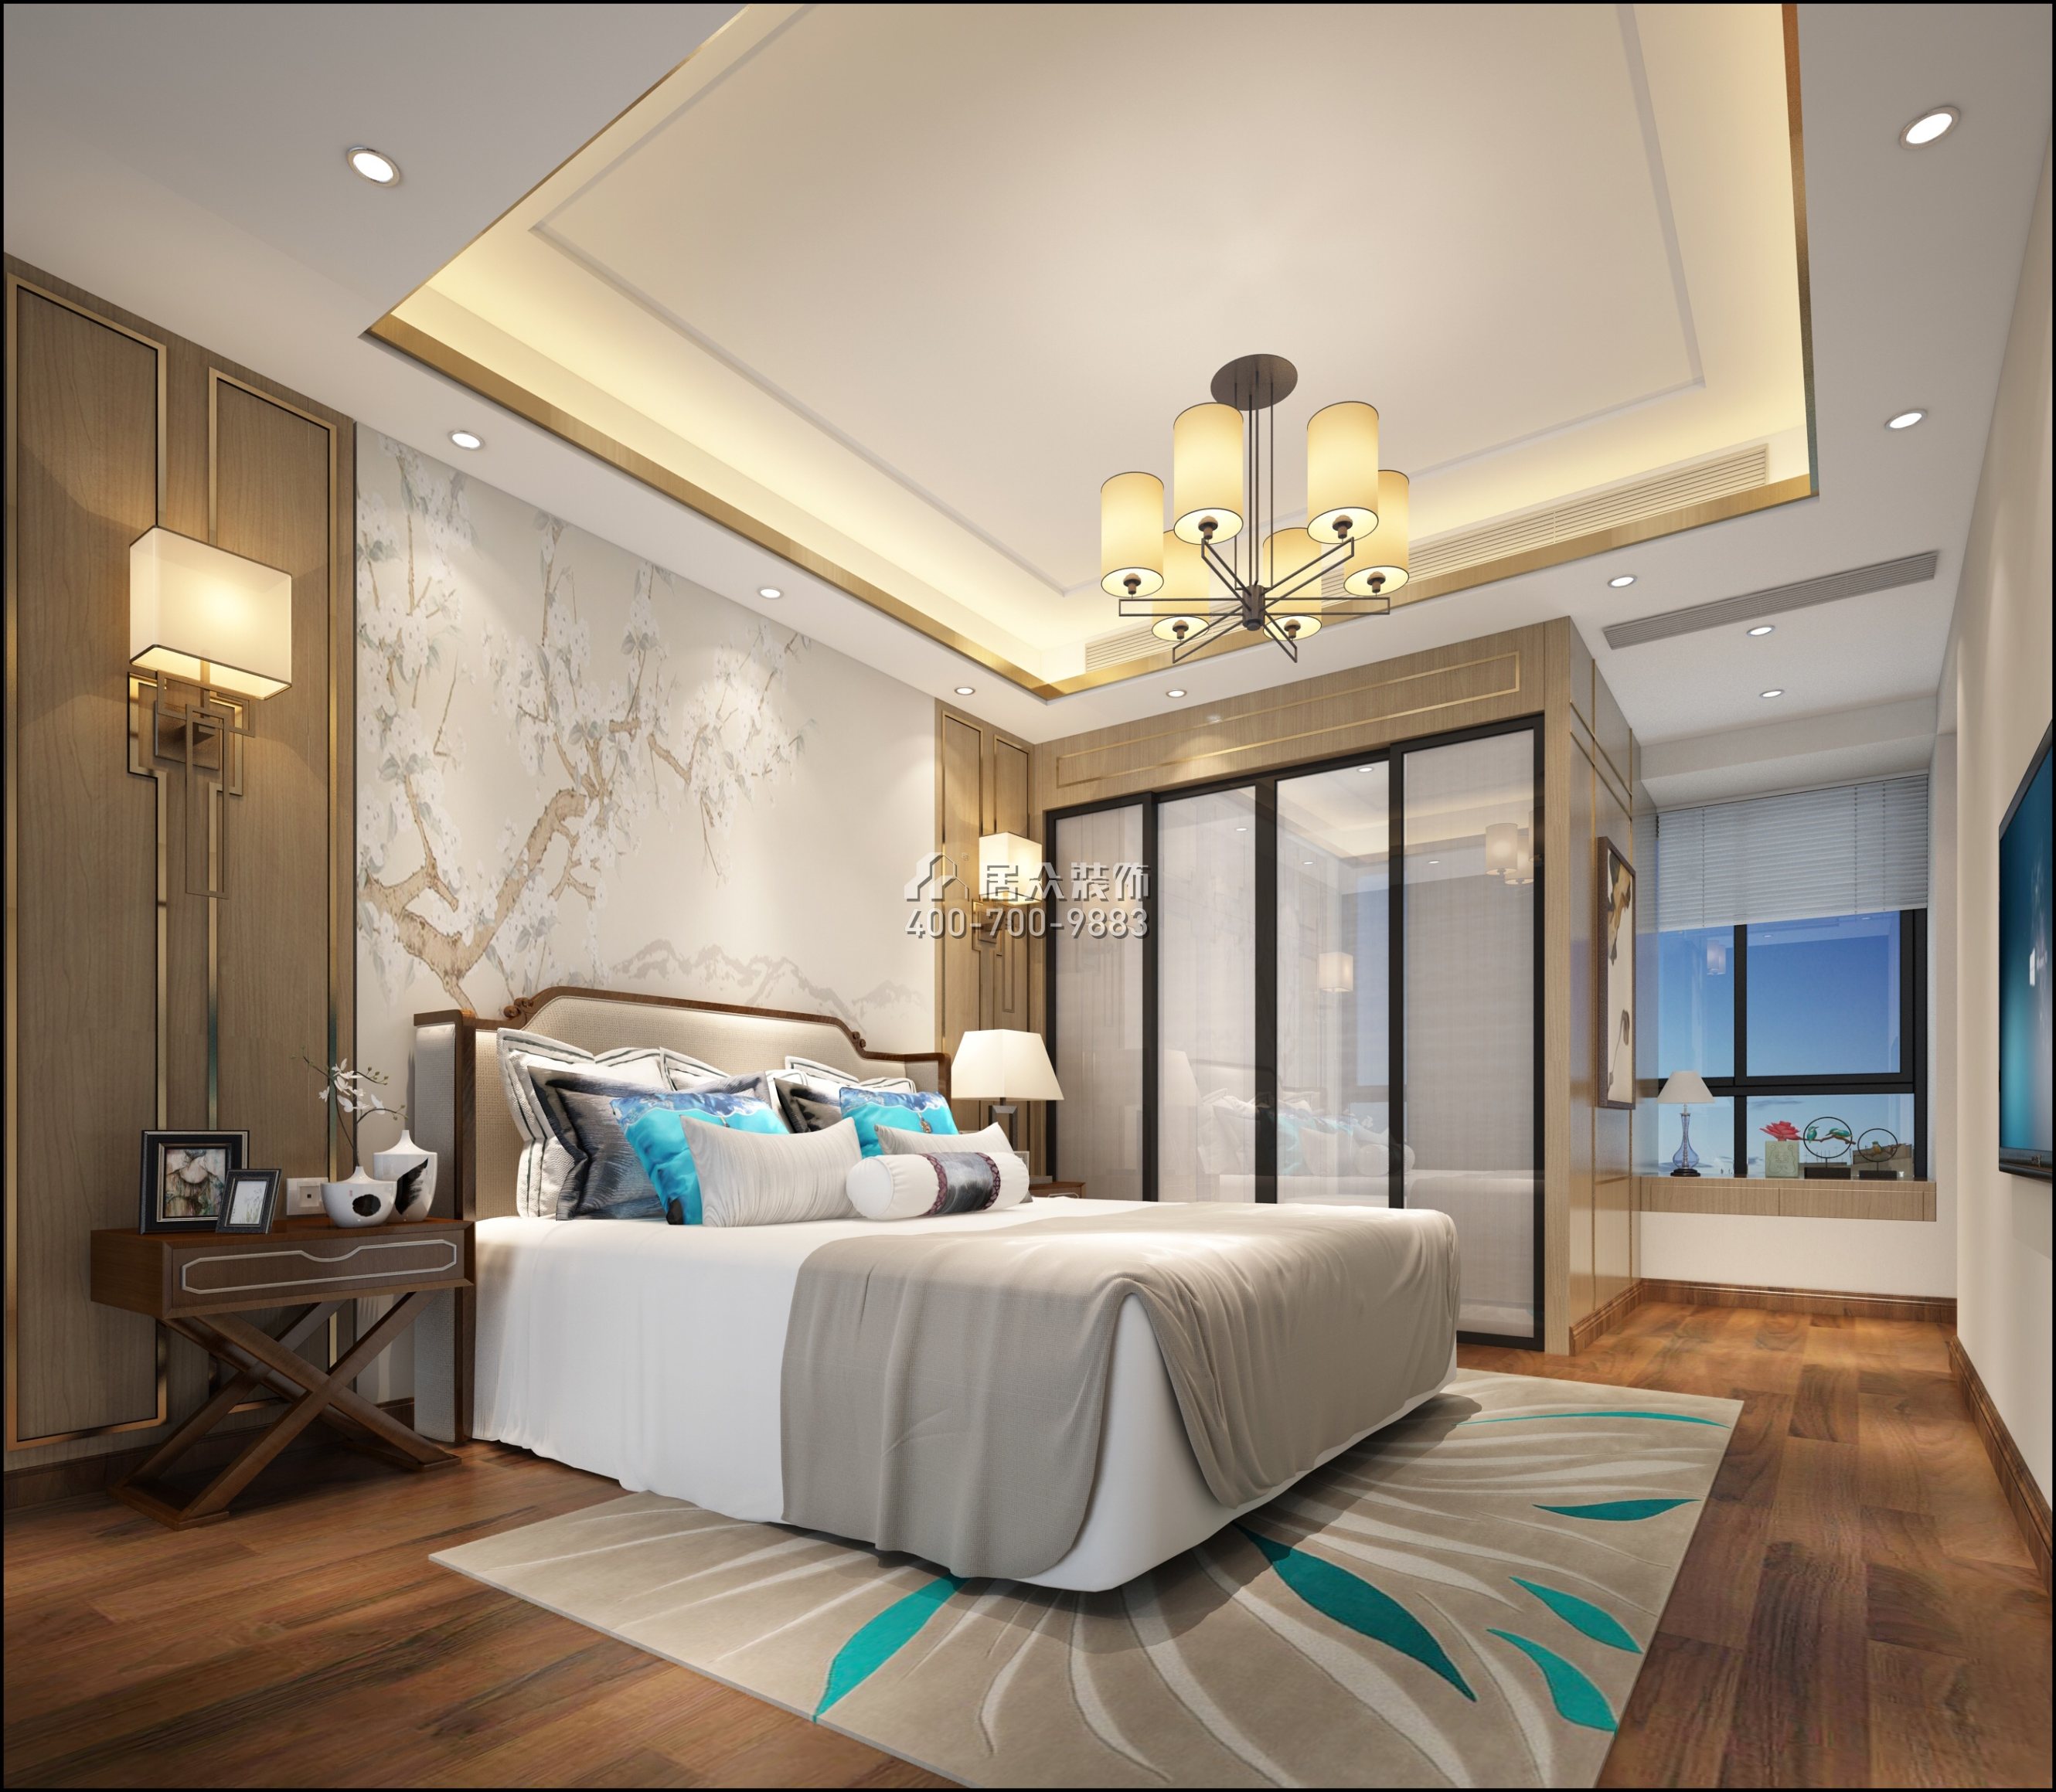 京基御景中央120平方米中式风格平层户型卧室装修效果图